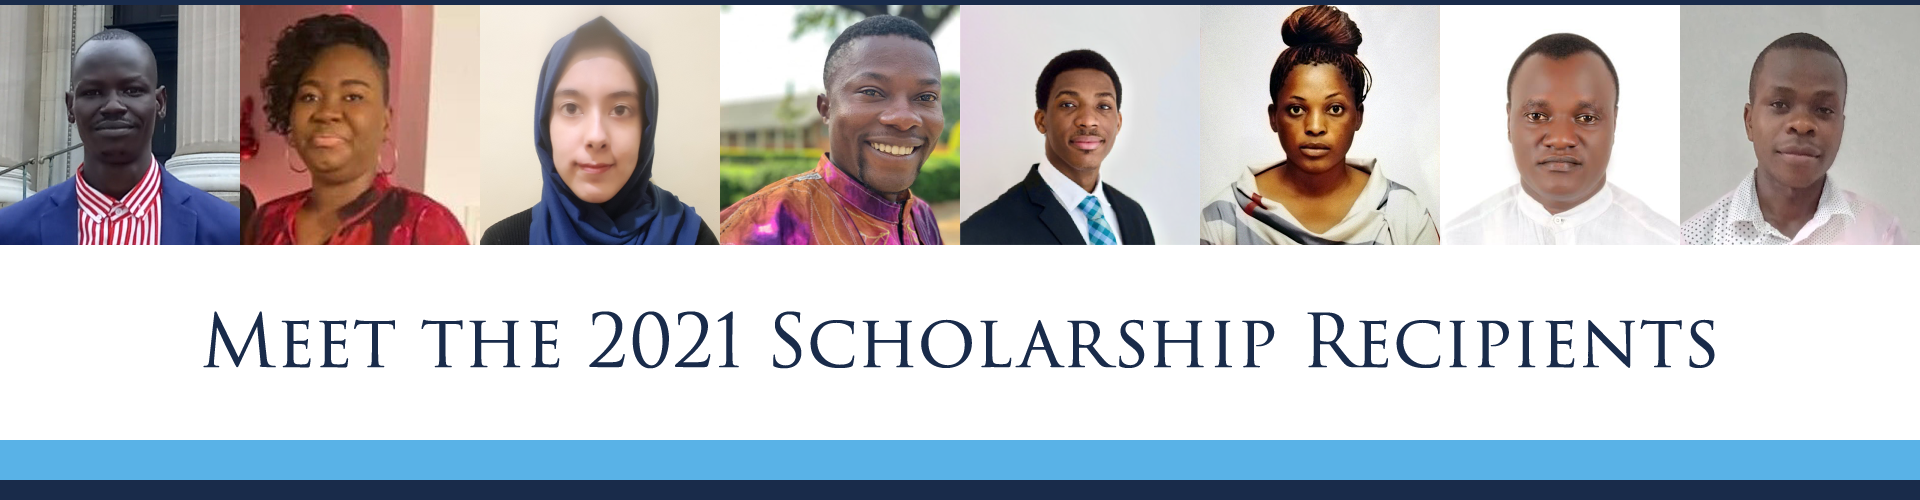 Meet the 2021 Scholarship Recipients